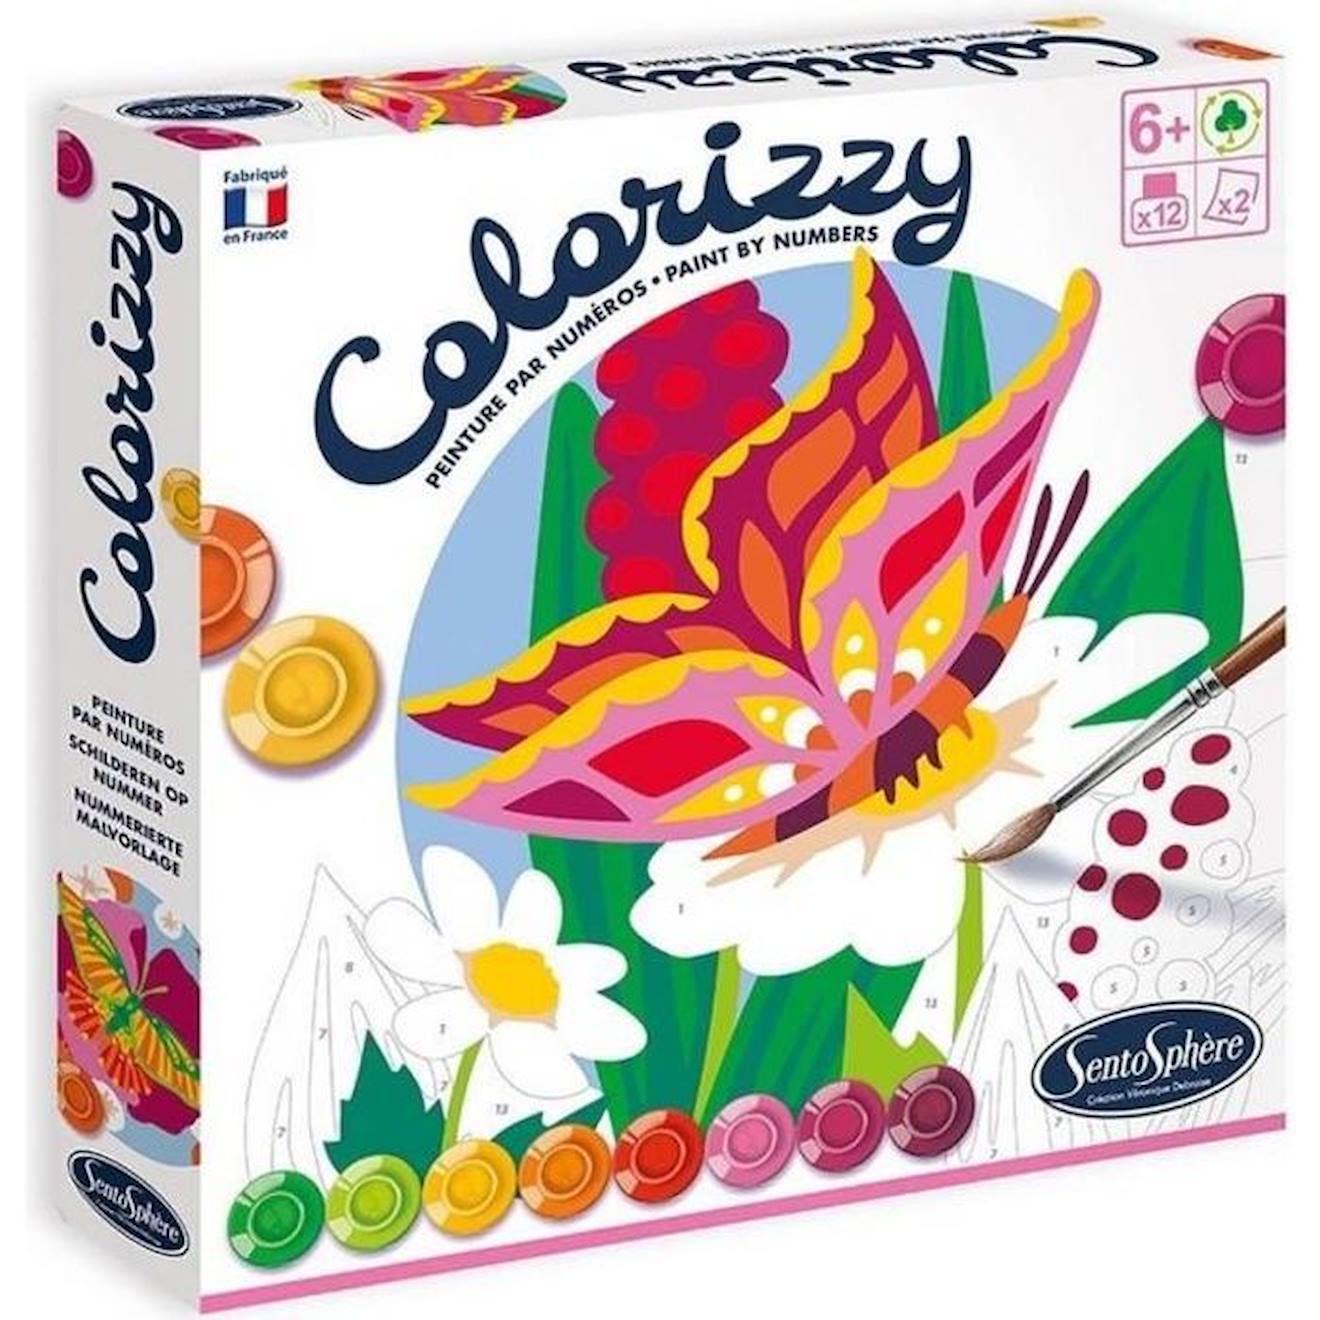 Peinture Colorizzy - Sentosphère - Les Papillons - Kit Enfant - Eco-conçu Rose